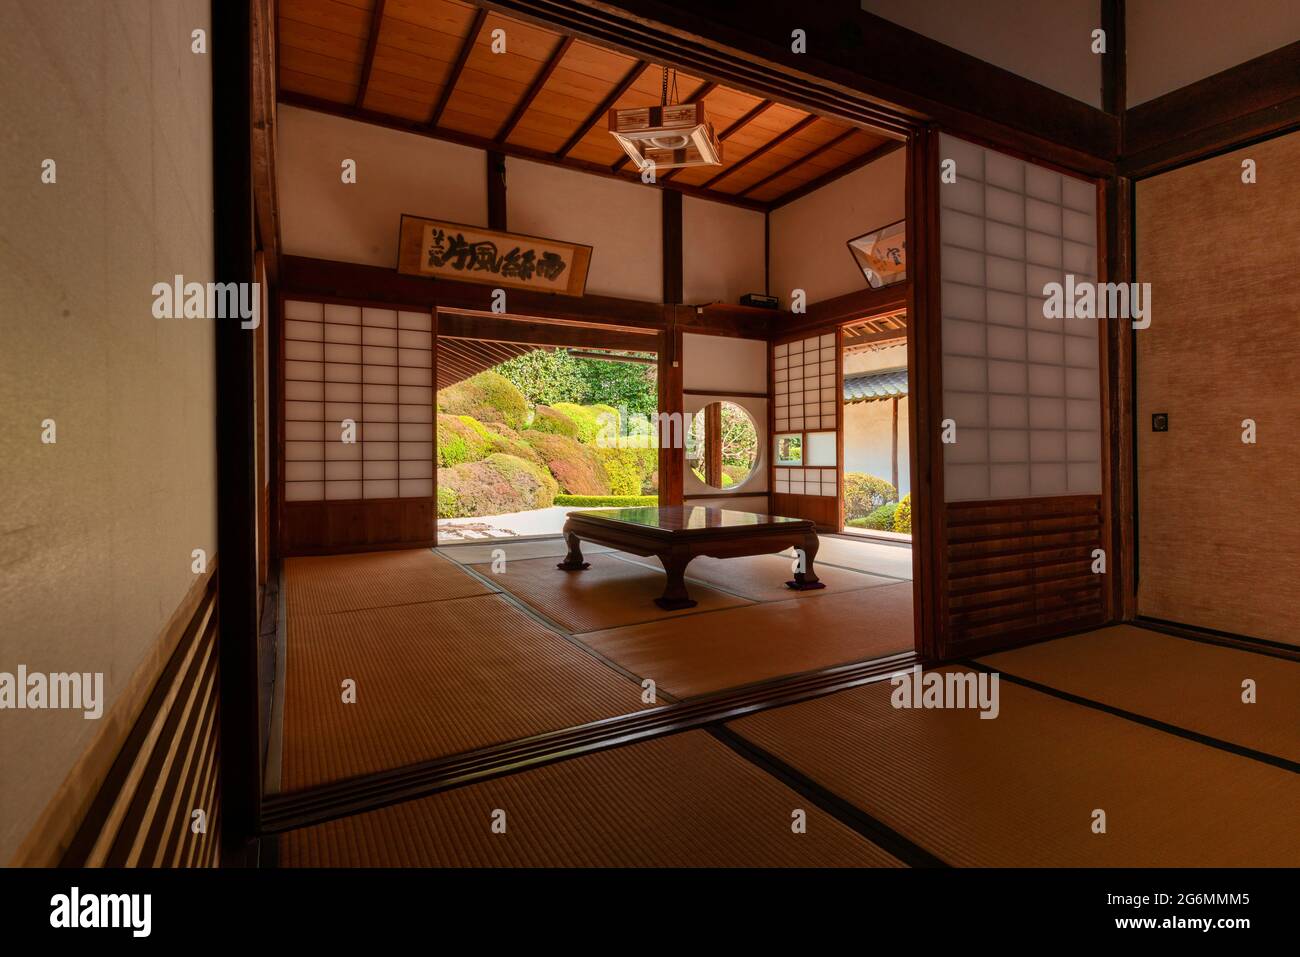 Japon, Takahashi, Temple Raikyuji, jardin, Préfecture d'Okayama .chambres intérieures d'une maison japonaise traditionnelle Banque D'Images